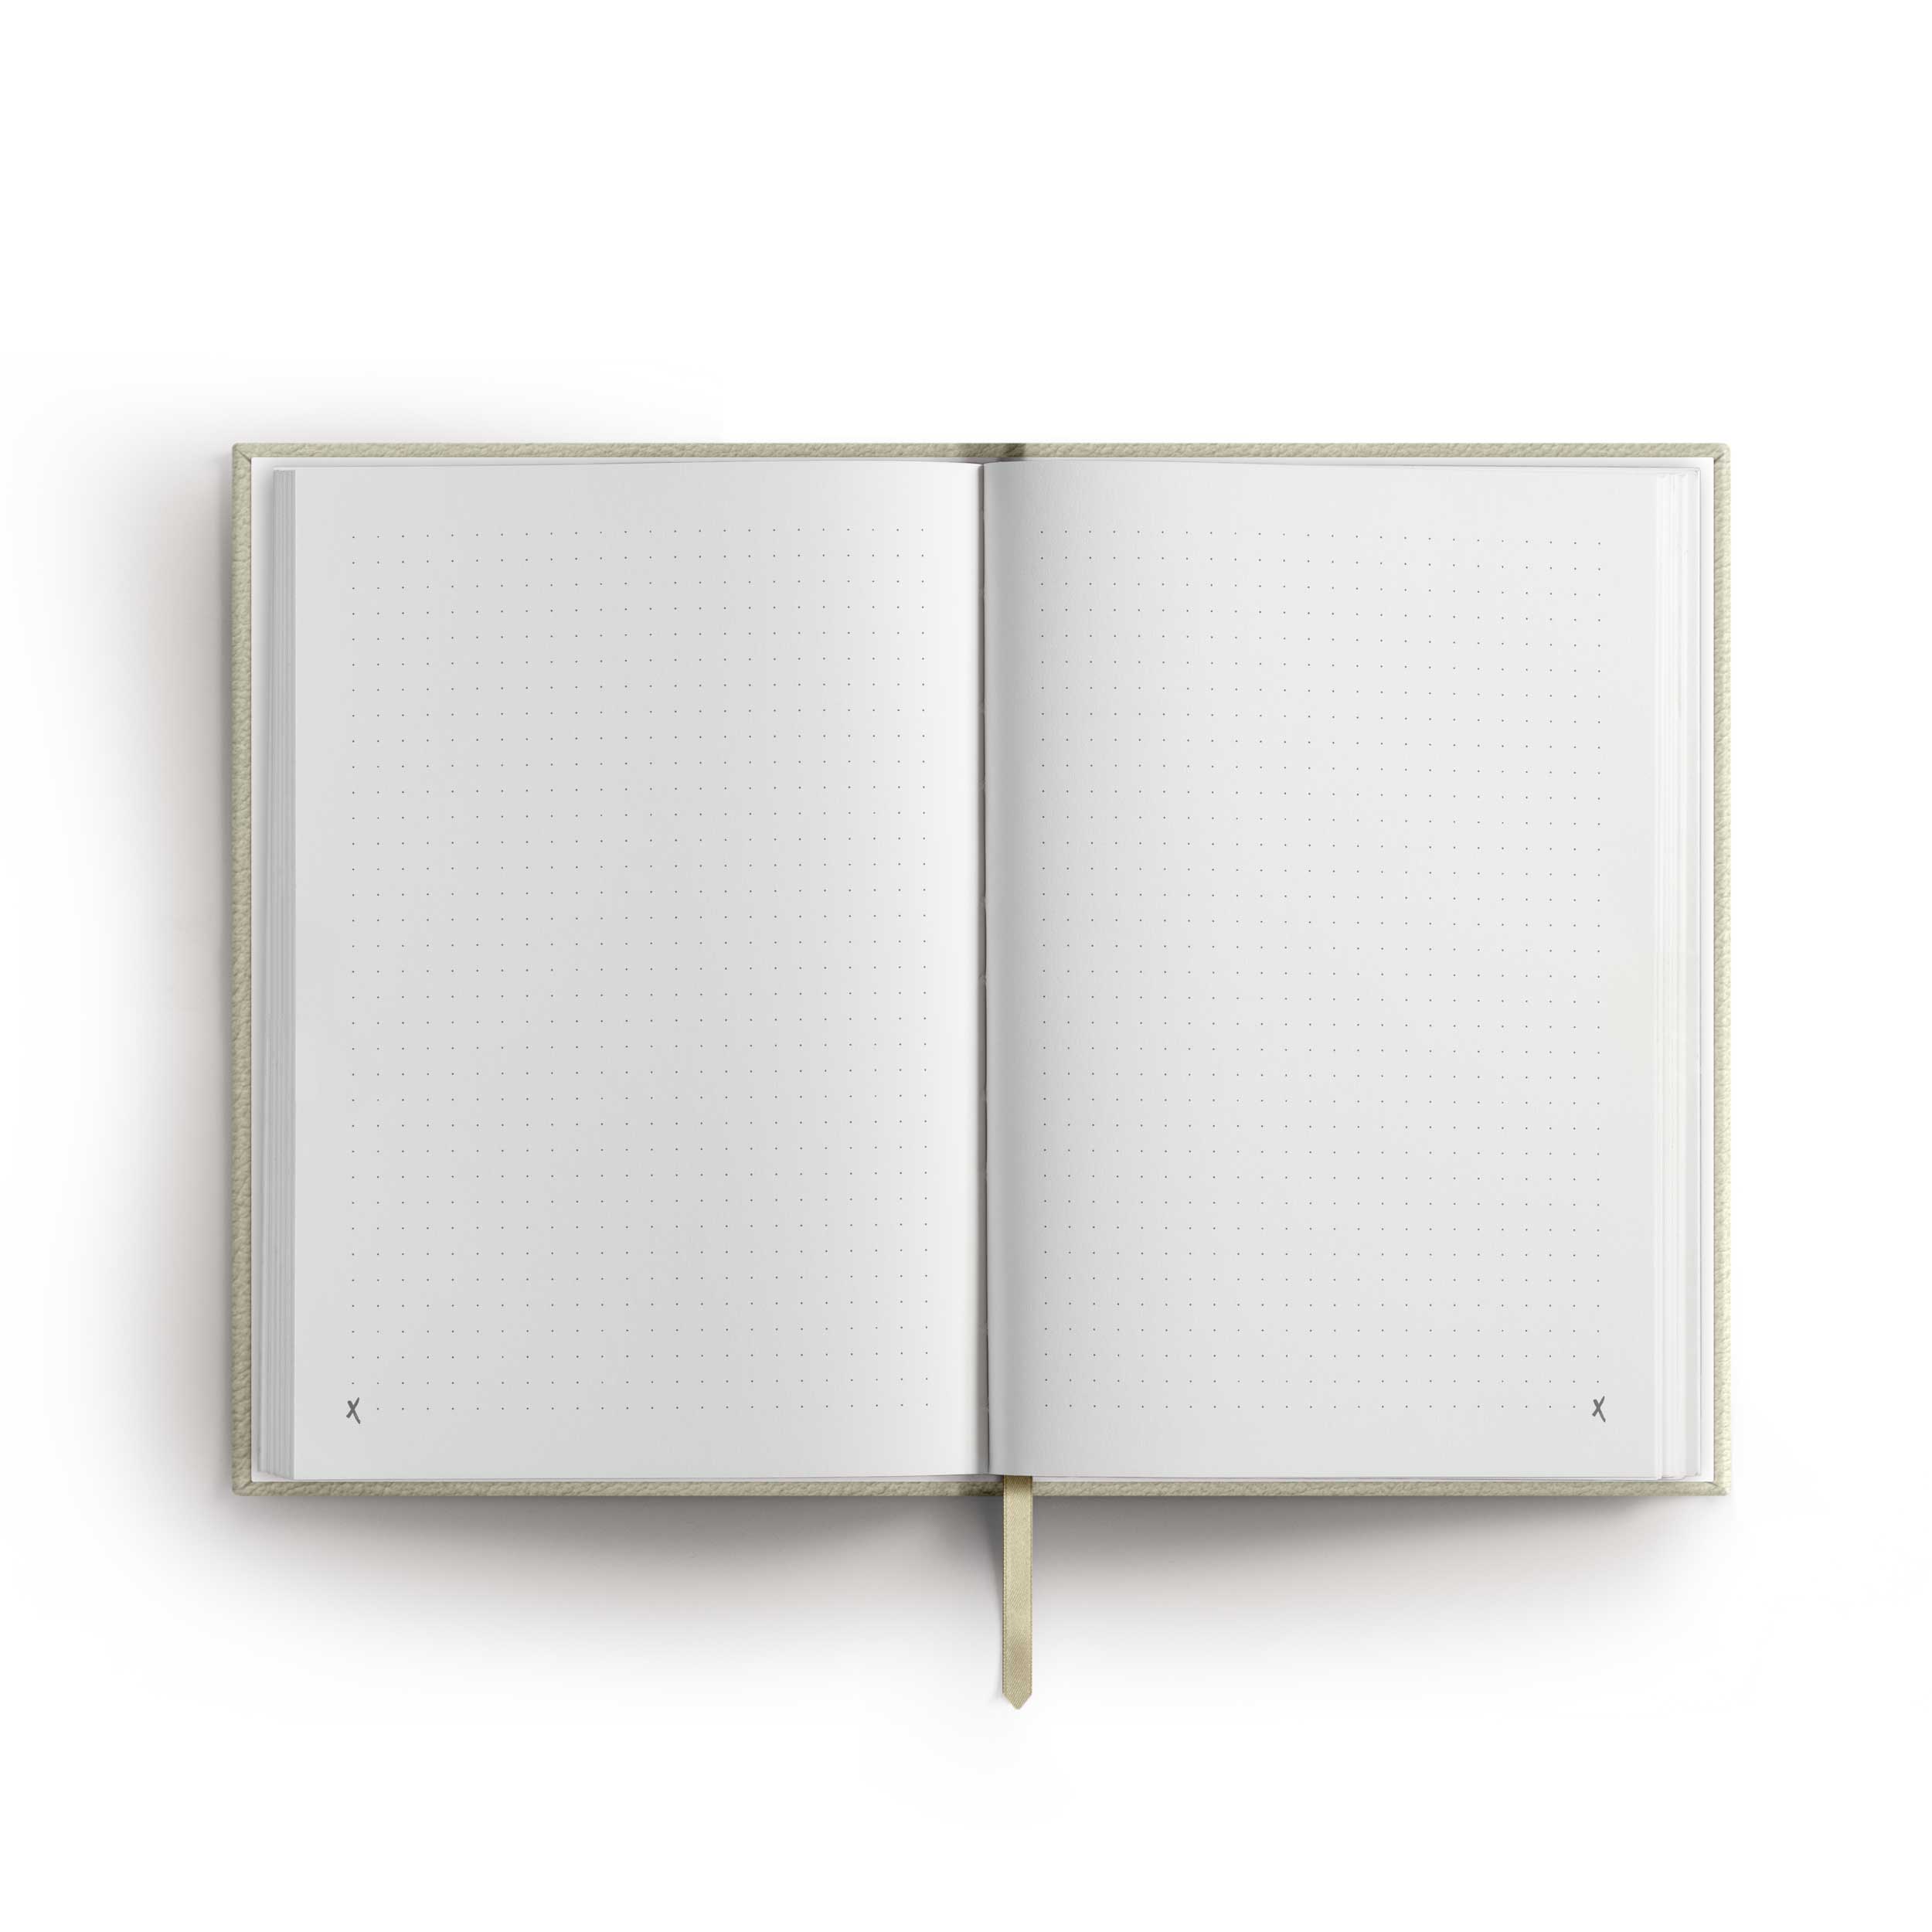 Notizbuch / Bullet Journal "Killer Ideas", A5, Cream / Gold, Kunstleder